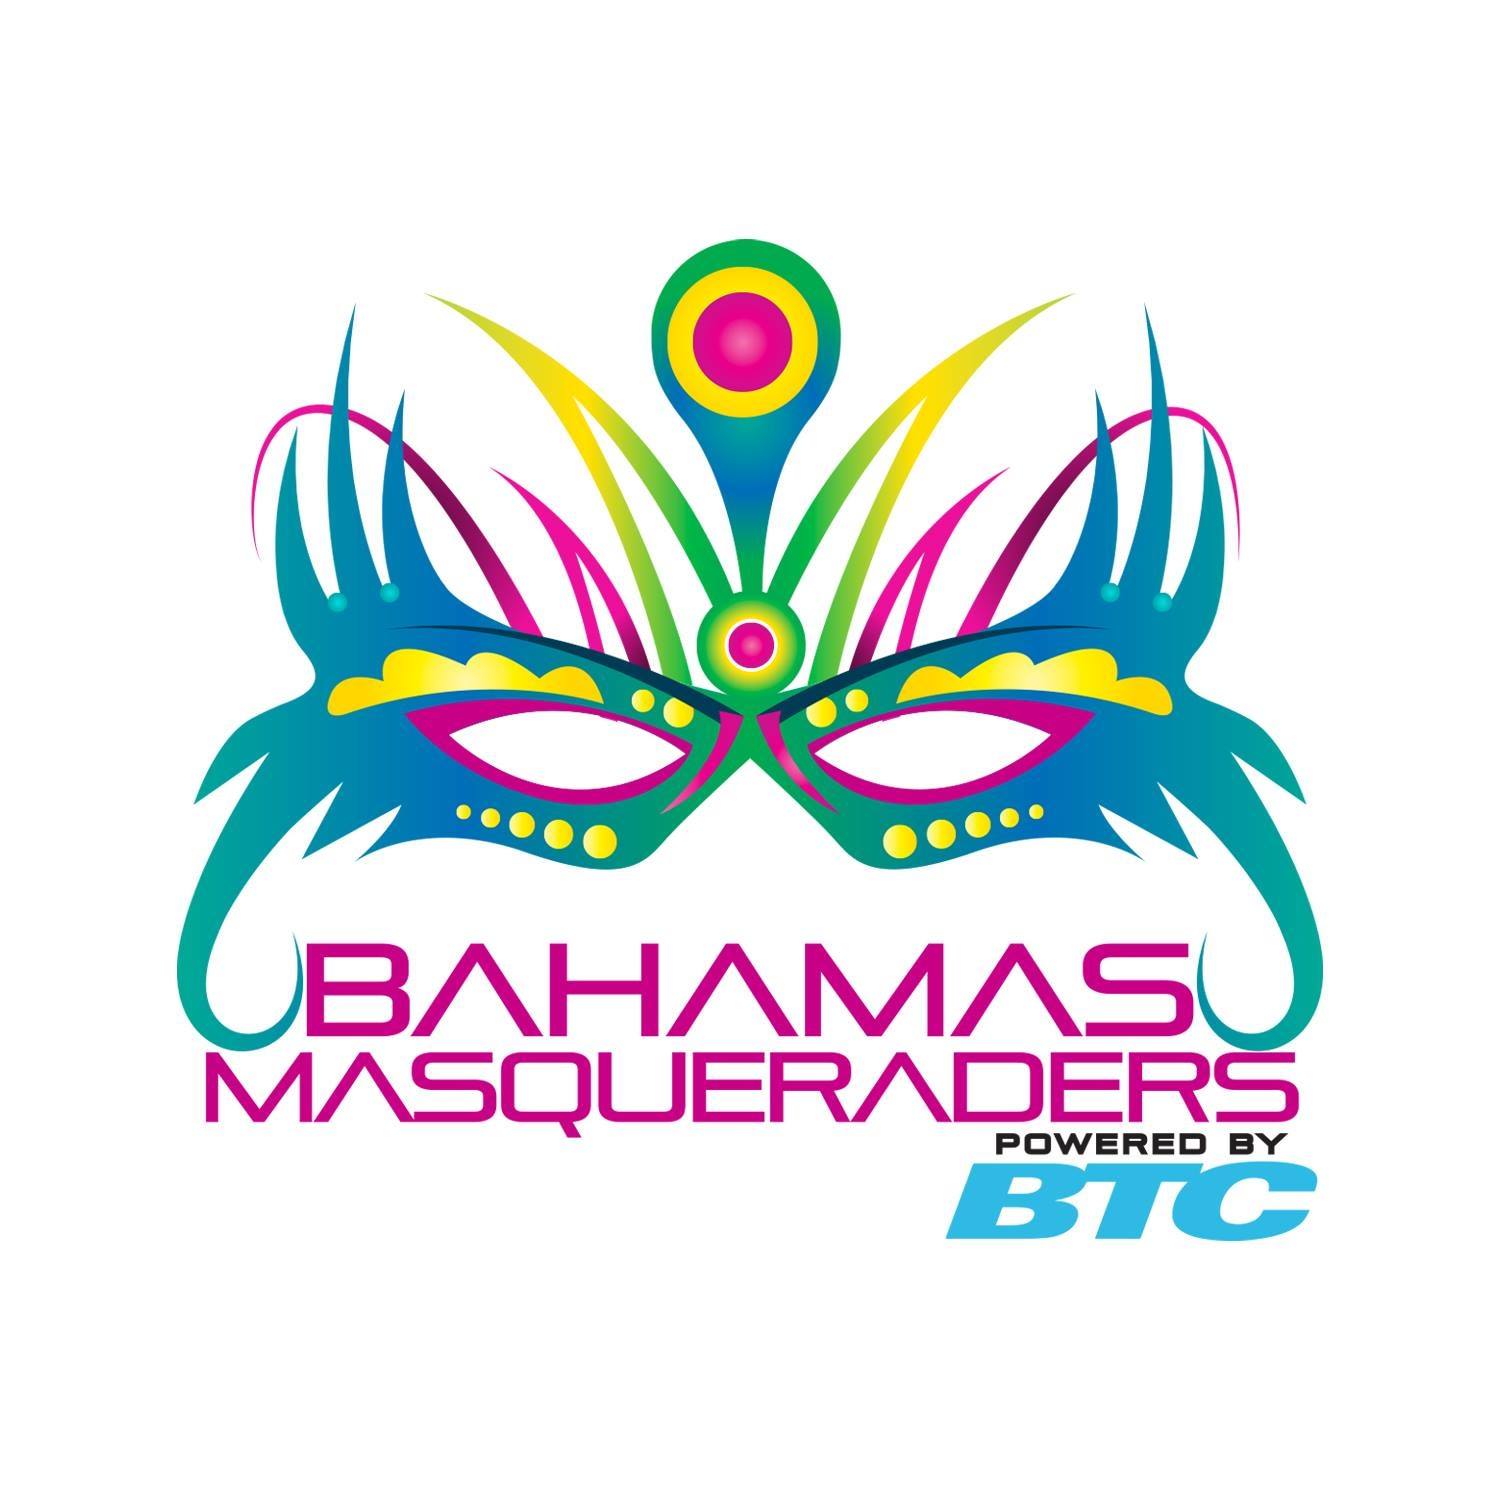 BahamasMasqueraders